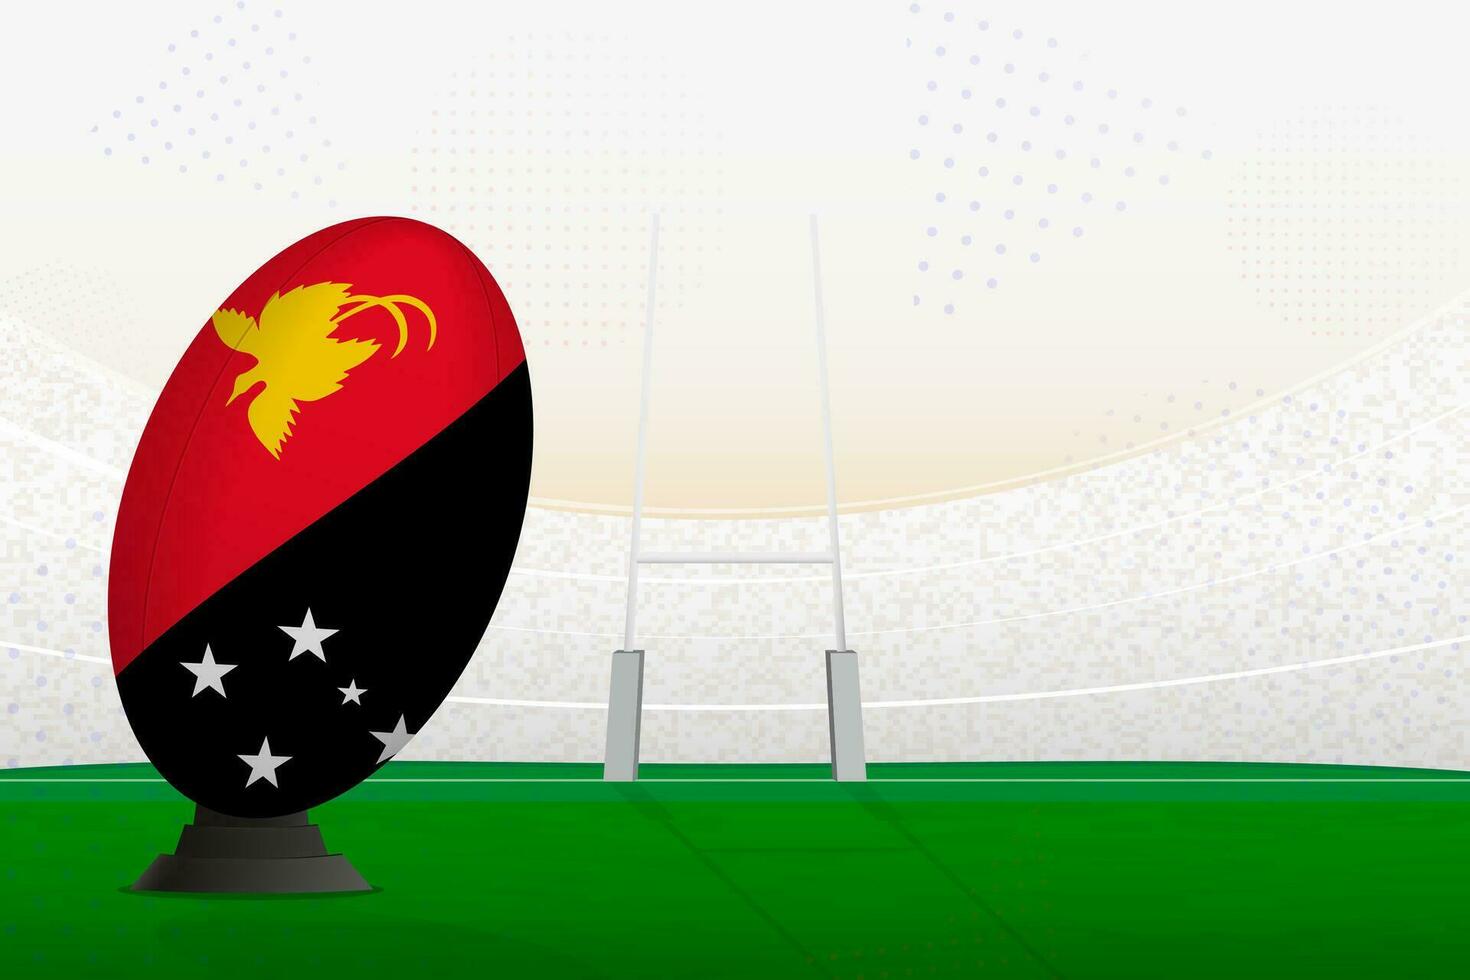 Papuasia nuevo Guinea nacional equipo rugby pelota en rugby estadio y objetivo publicaciones, preparando para un multa o gratis patada. vector